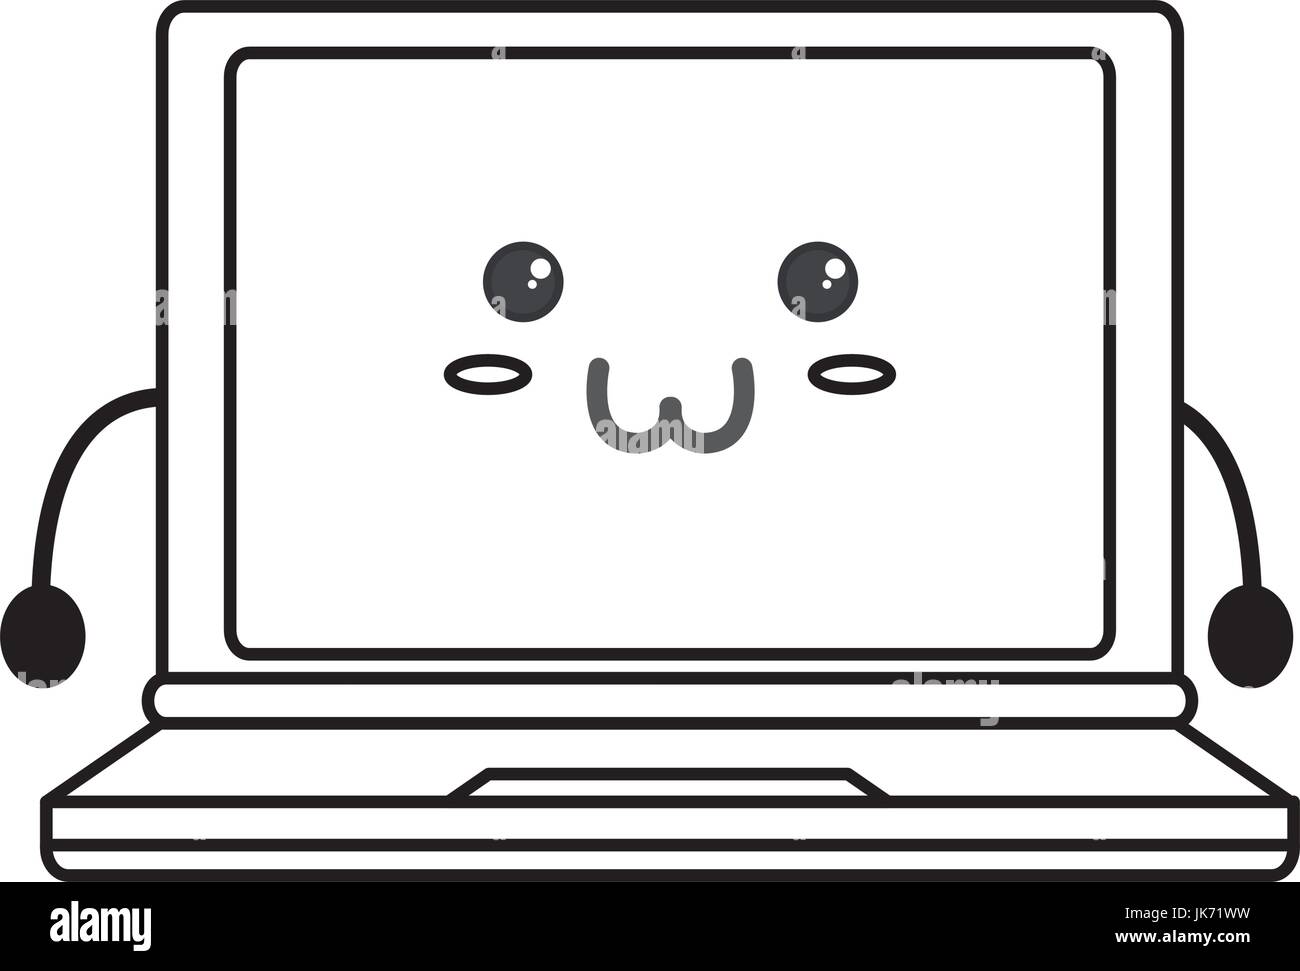 Cute laptop kawaii Stock Vector Image & Art - Alamy